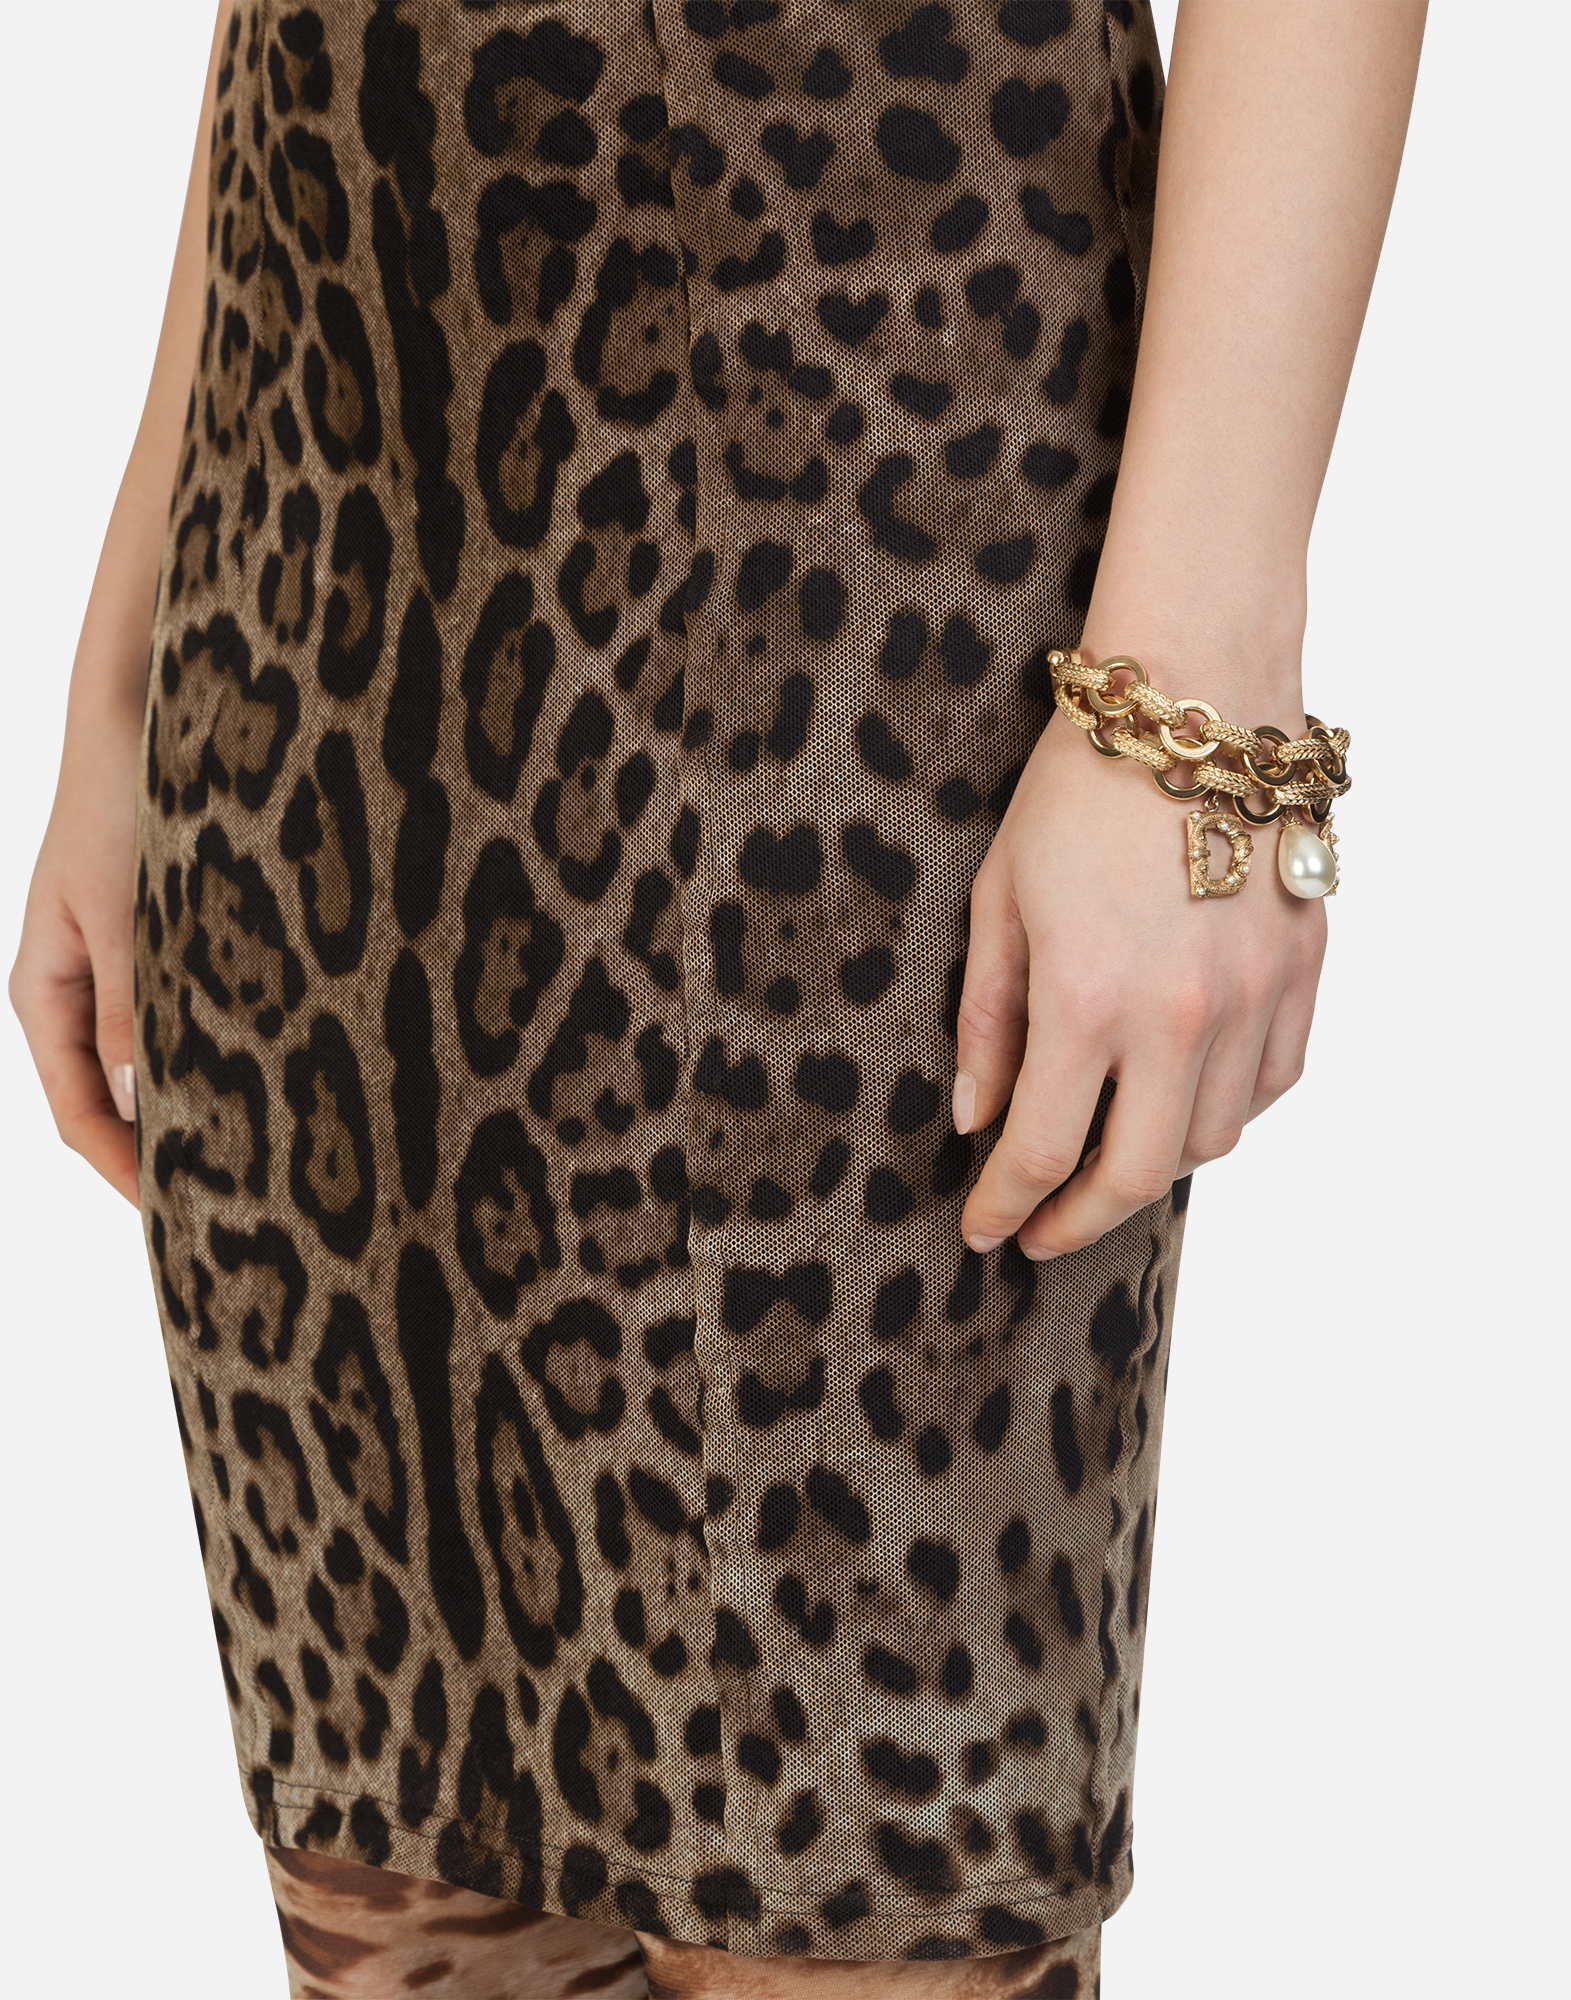 d&g leopard dress